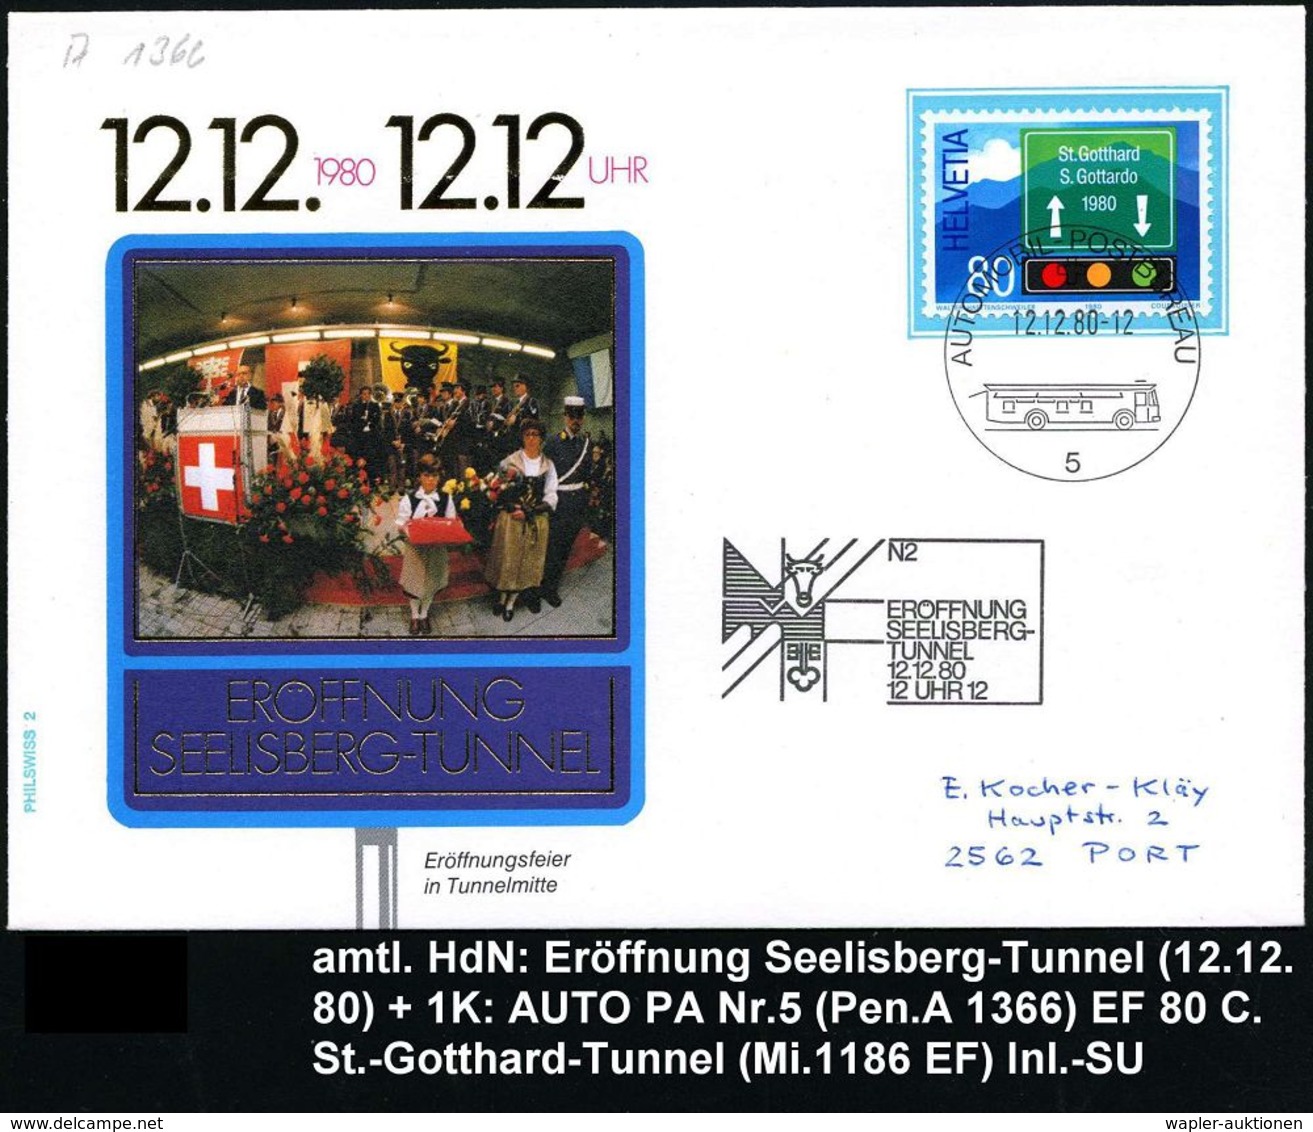 STRASSE / VERKEHRSWEGE / AUTOBAHN : SCHWEIZ 1980 (12.12.) HdN: N2/ERÖFFNUNG/SEELISBERG-/TUNNEL/..12 UHR 12 + 1K.: AUTO-P - Autos